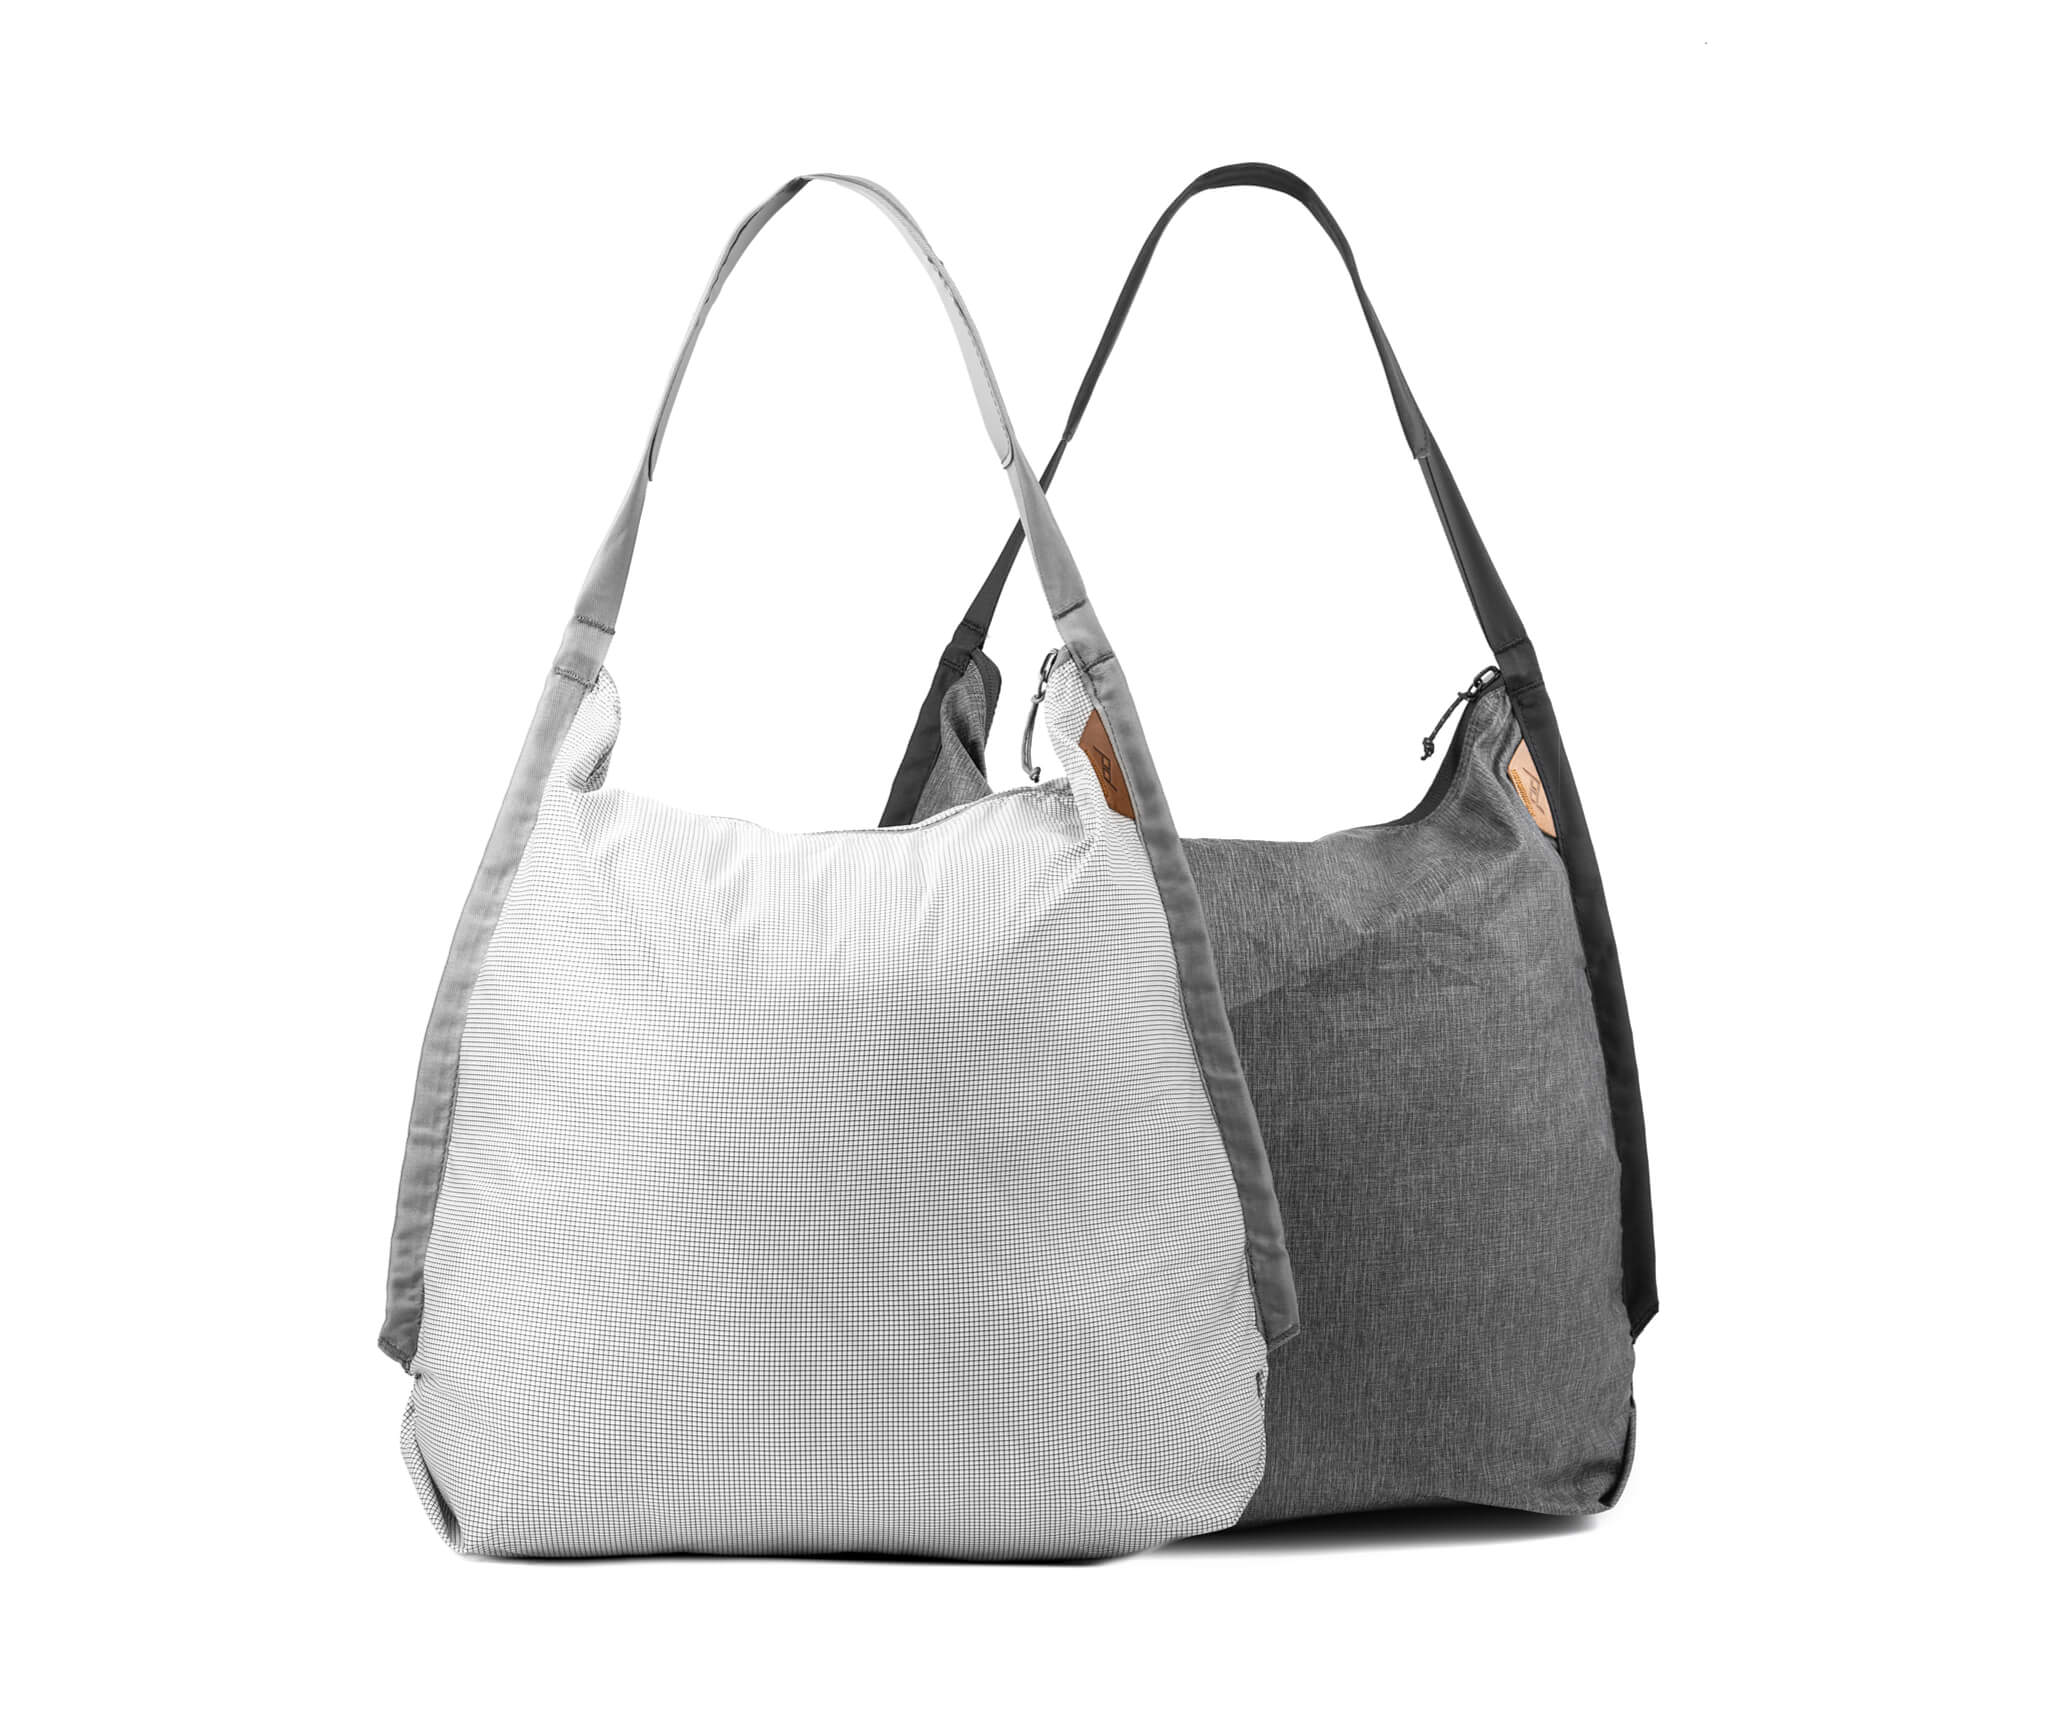 Sbalitelnou tašku Packable Tote si můžete pořídit v jedné ze dvou barevných variant | Zdroj foto Peak Design